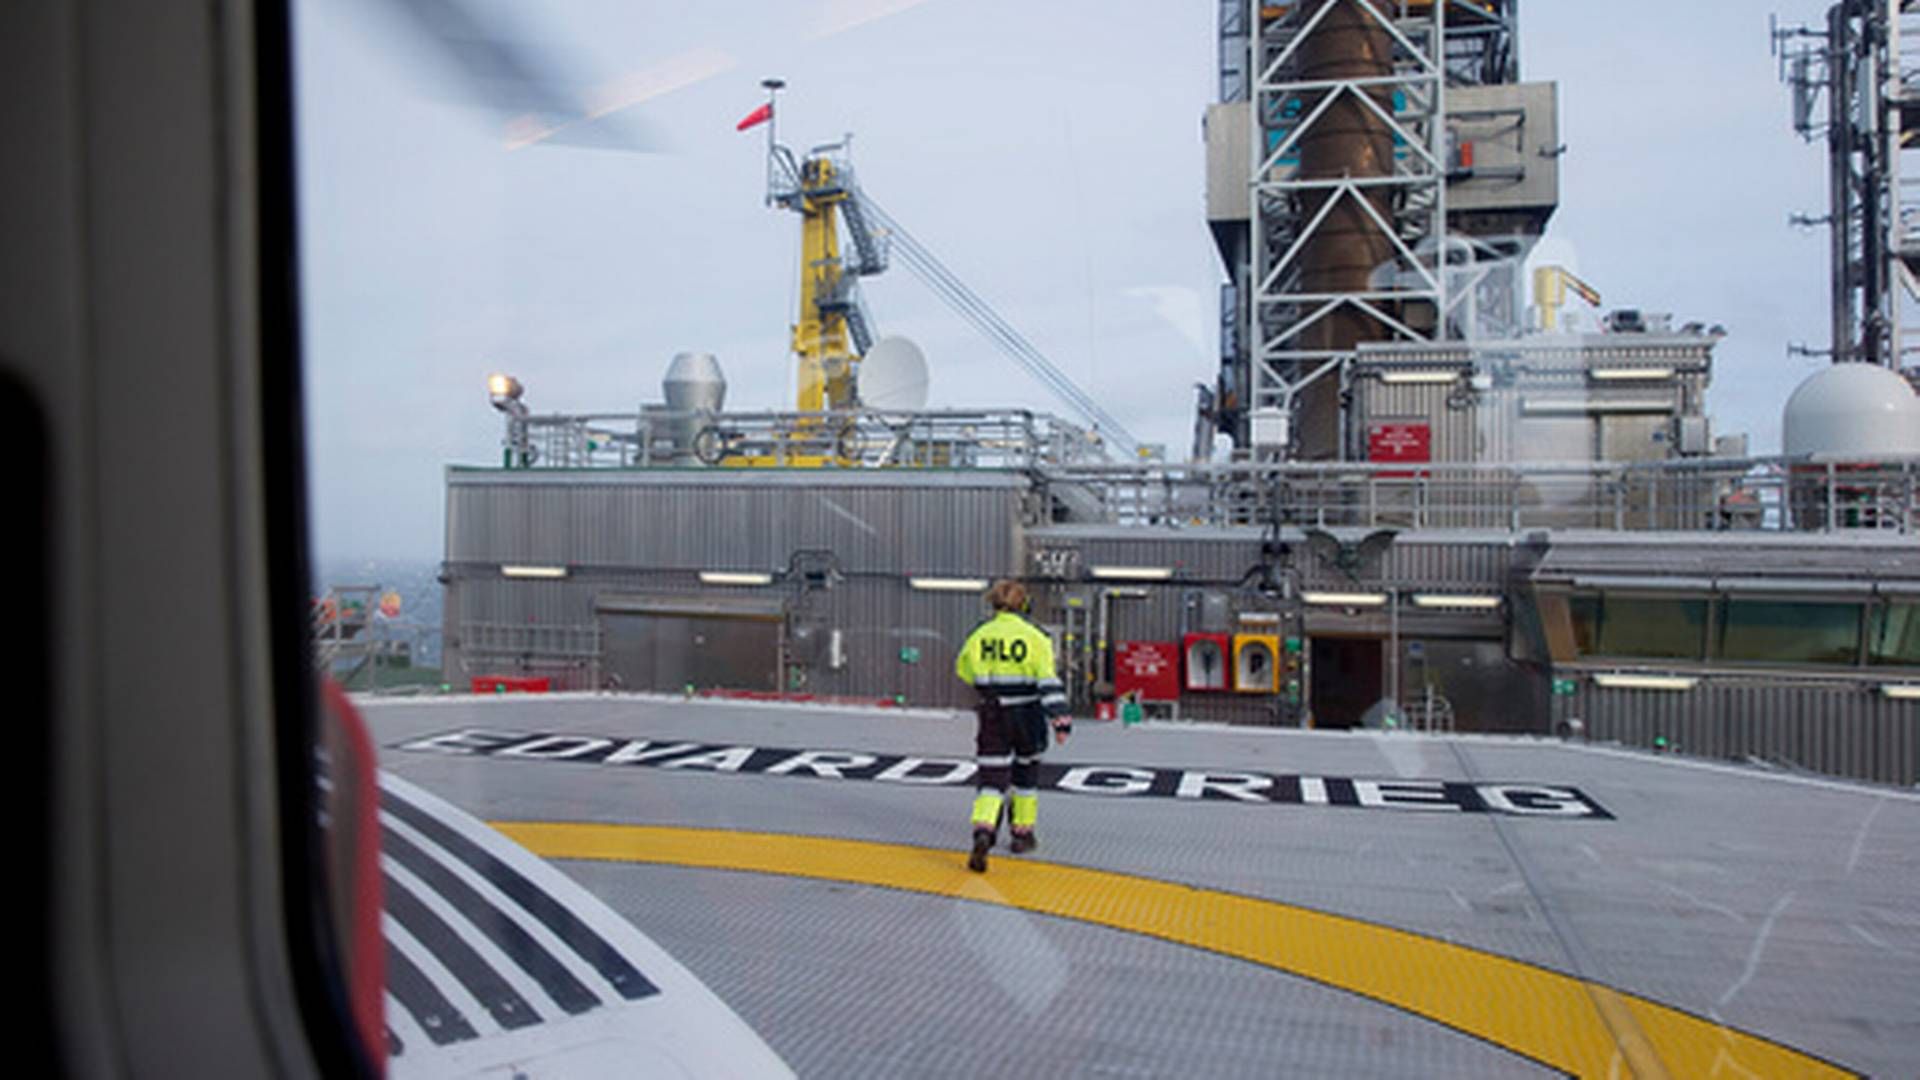 OPPJUSTERT: Forventet petroleumsskatt er skrudd opp over 100 milliarder kroner. Bildet viser Edvard Grieg-feltet i Nordsjøen. | Foto: Håkon Mosvold Larsen / NTB